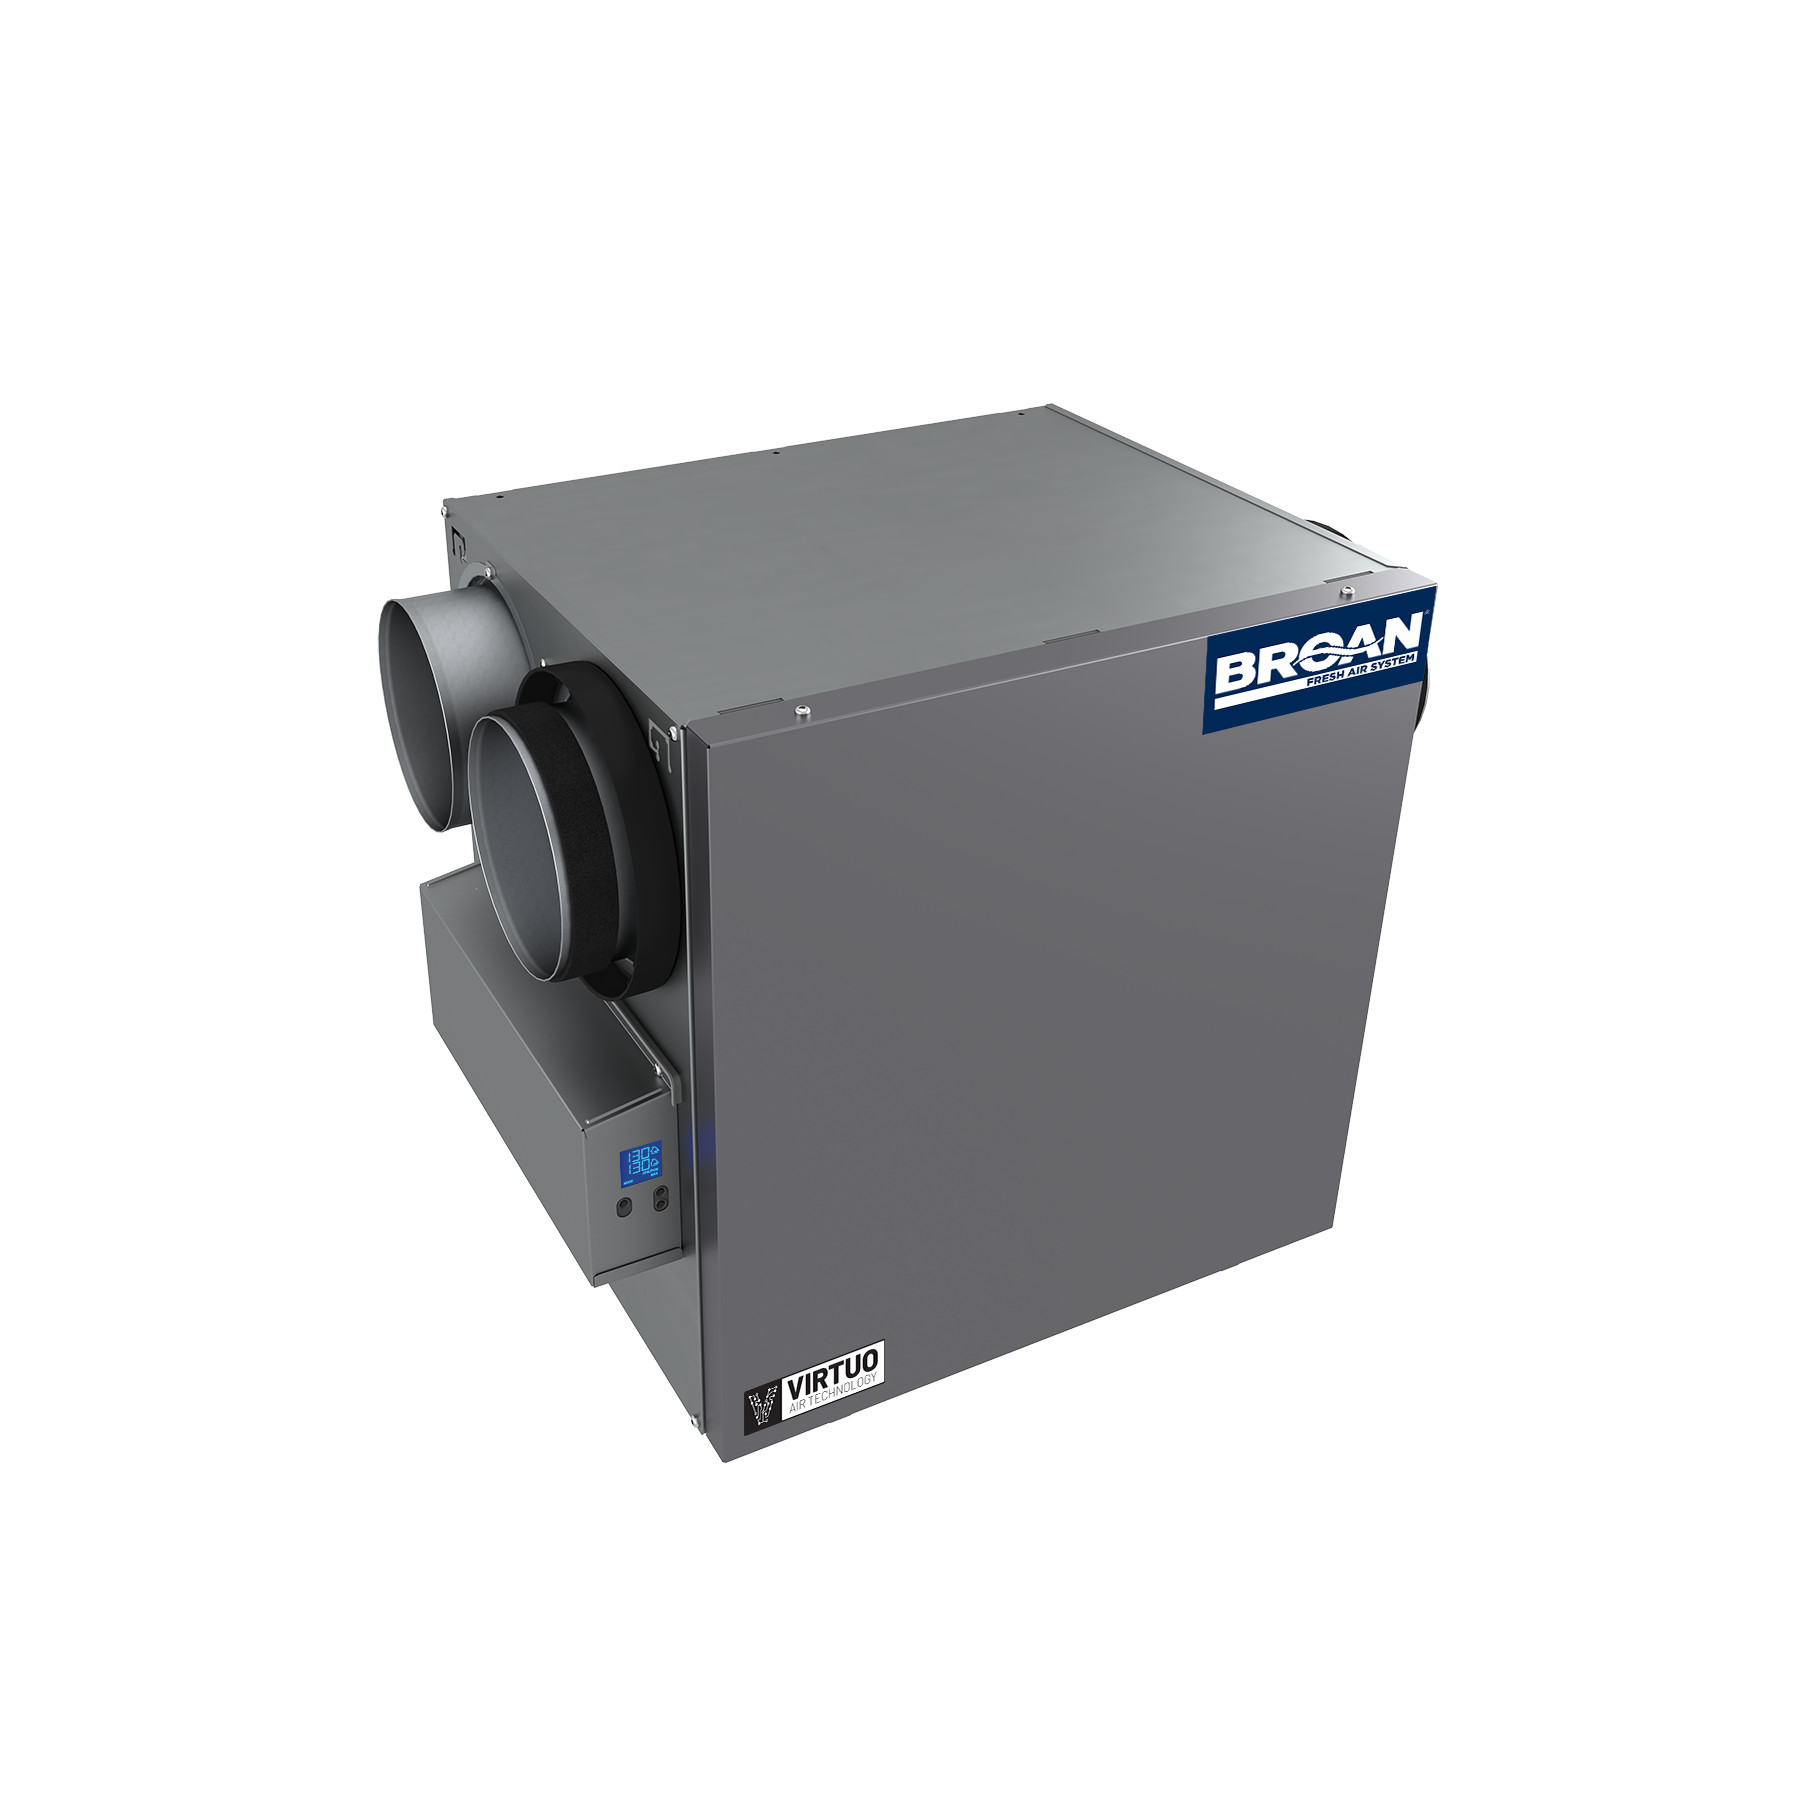 Broan® AI Series™ 150 CFM Heat Recovery Ventilator (HRV) 